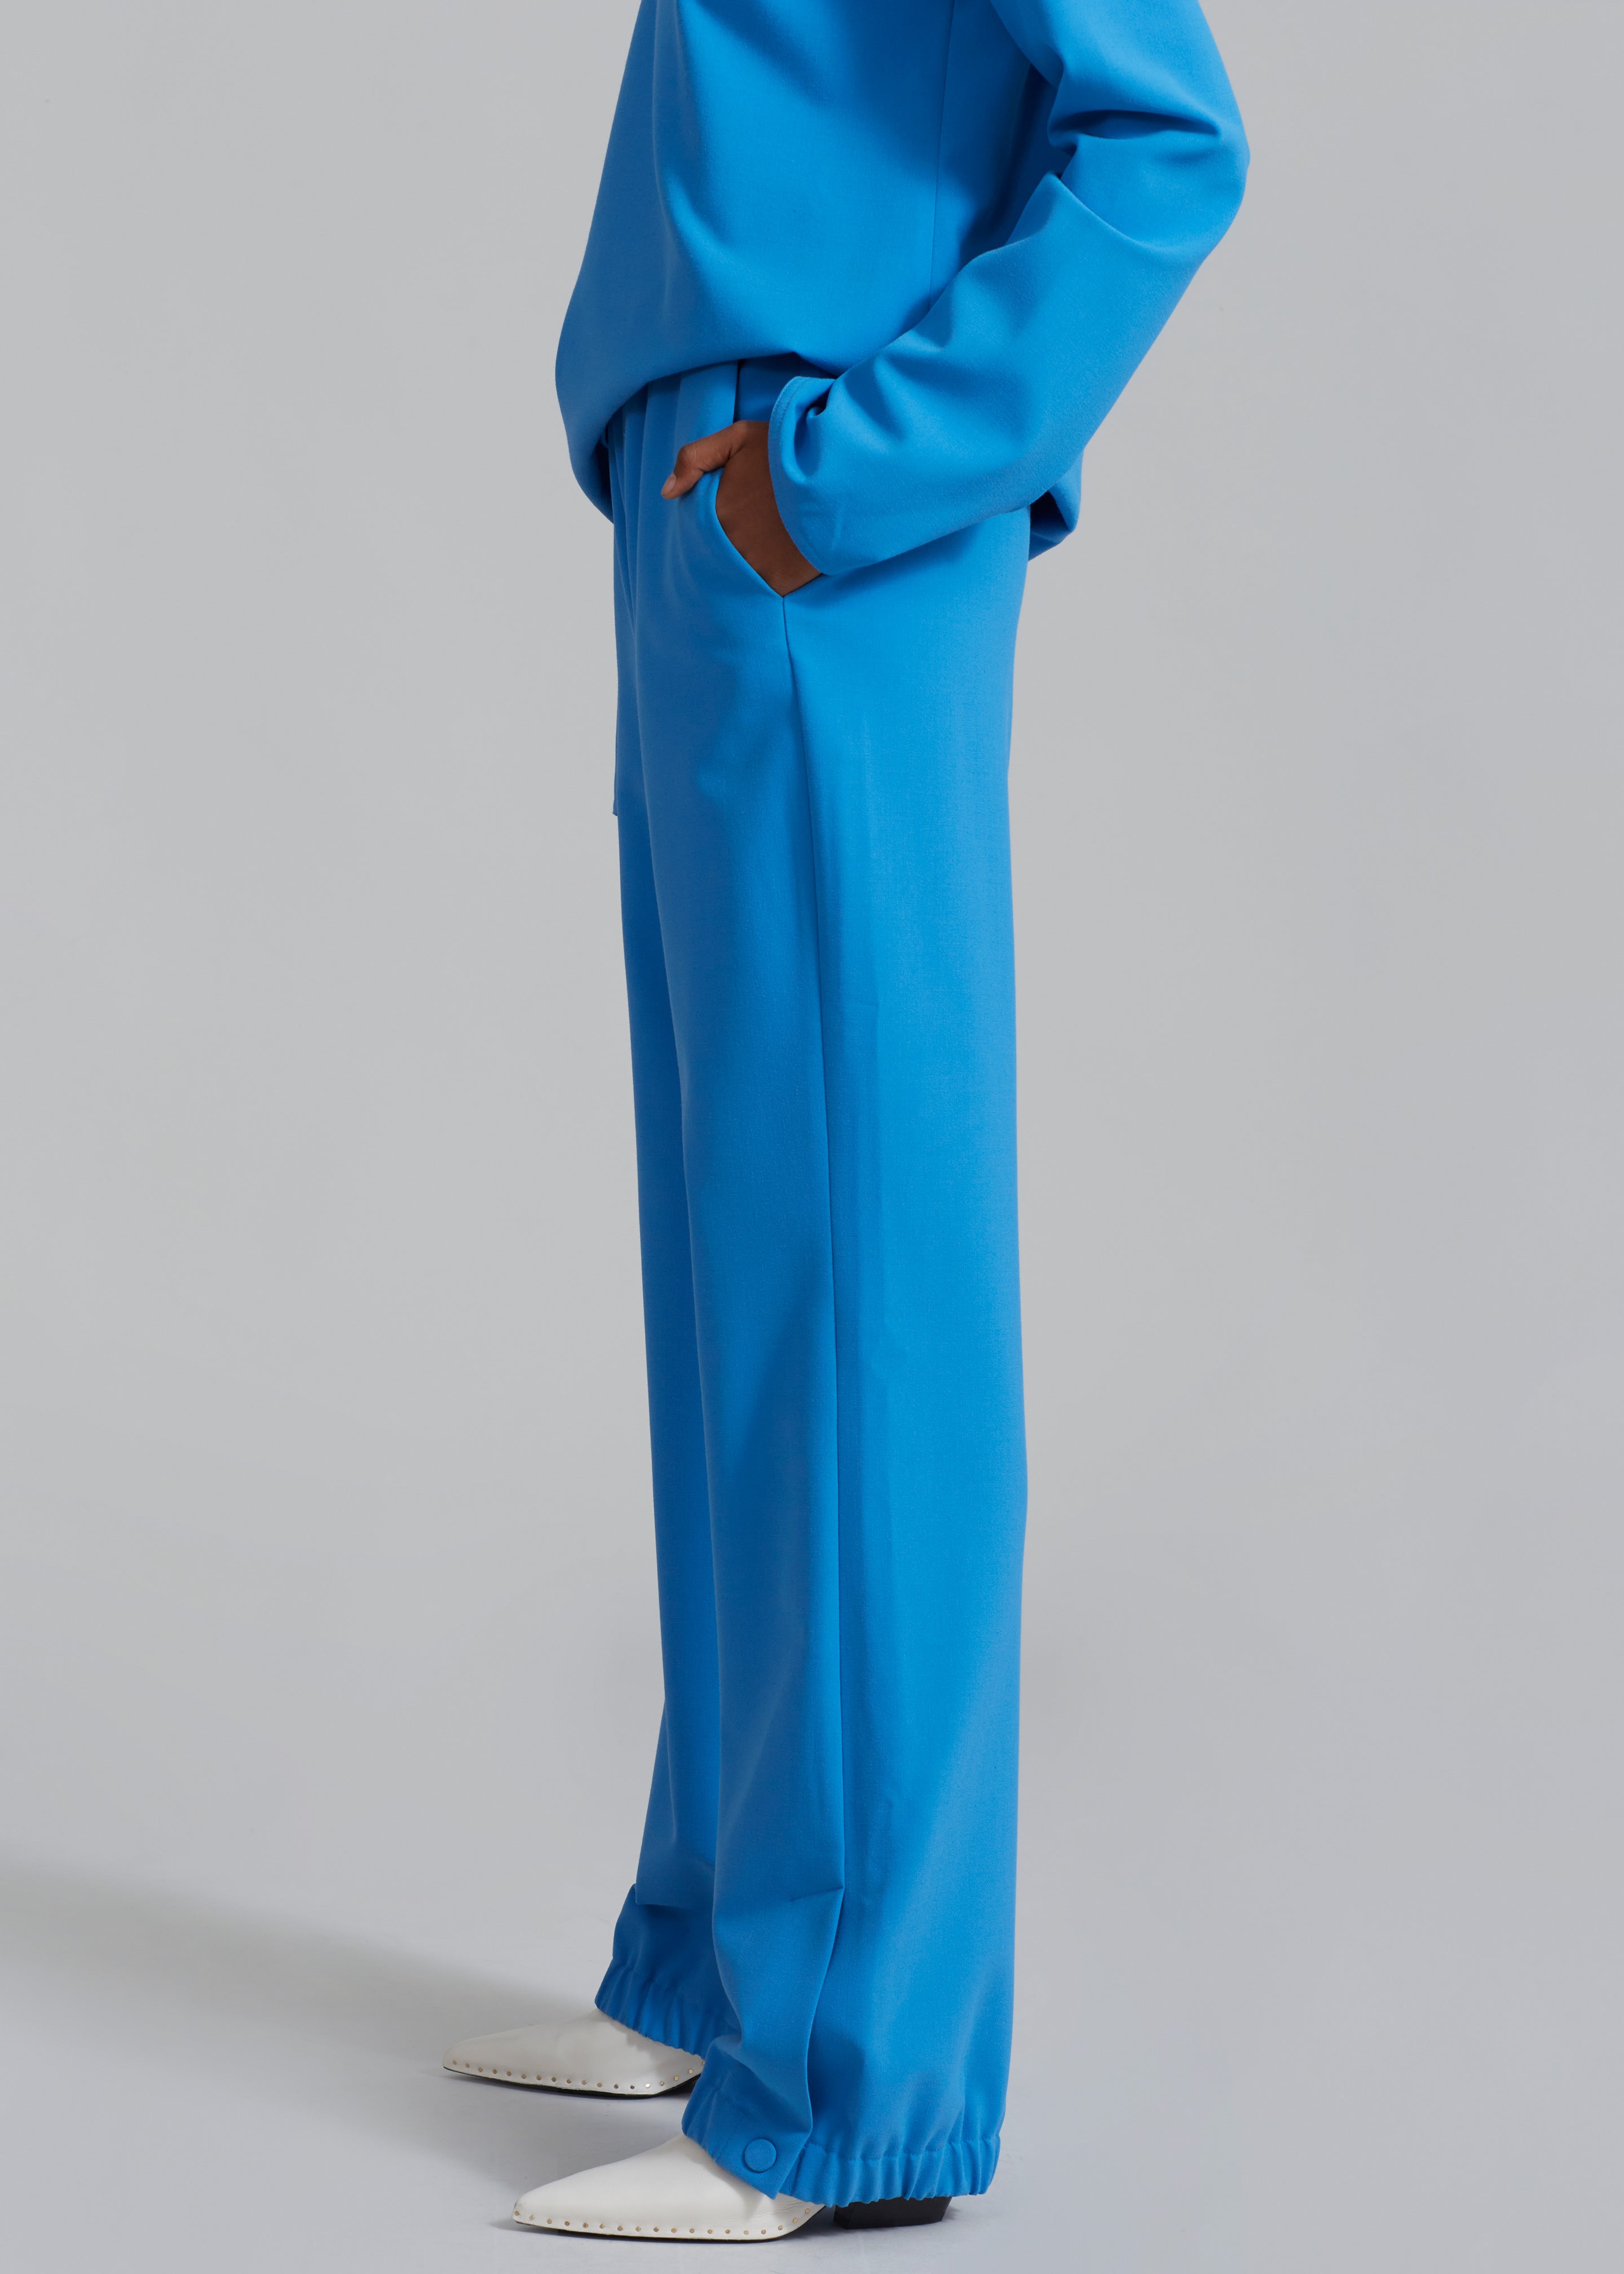 Nanushka Nicia Elasticated Trouser - Electric Blue - 2